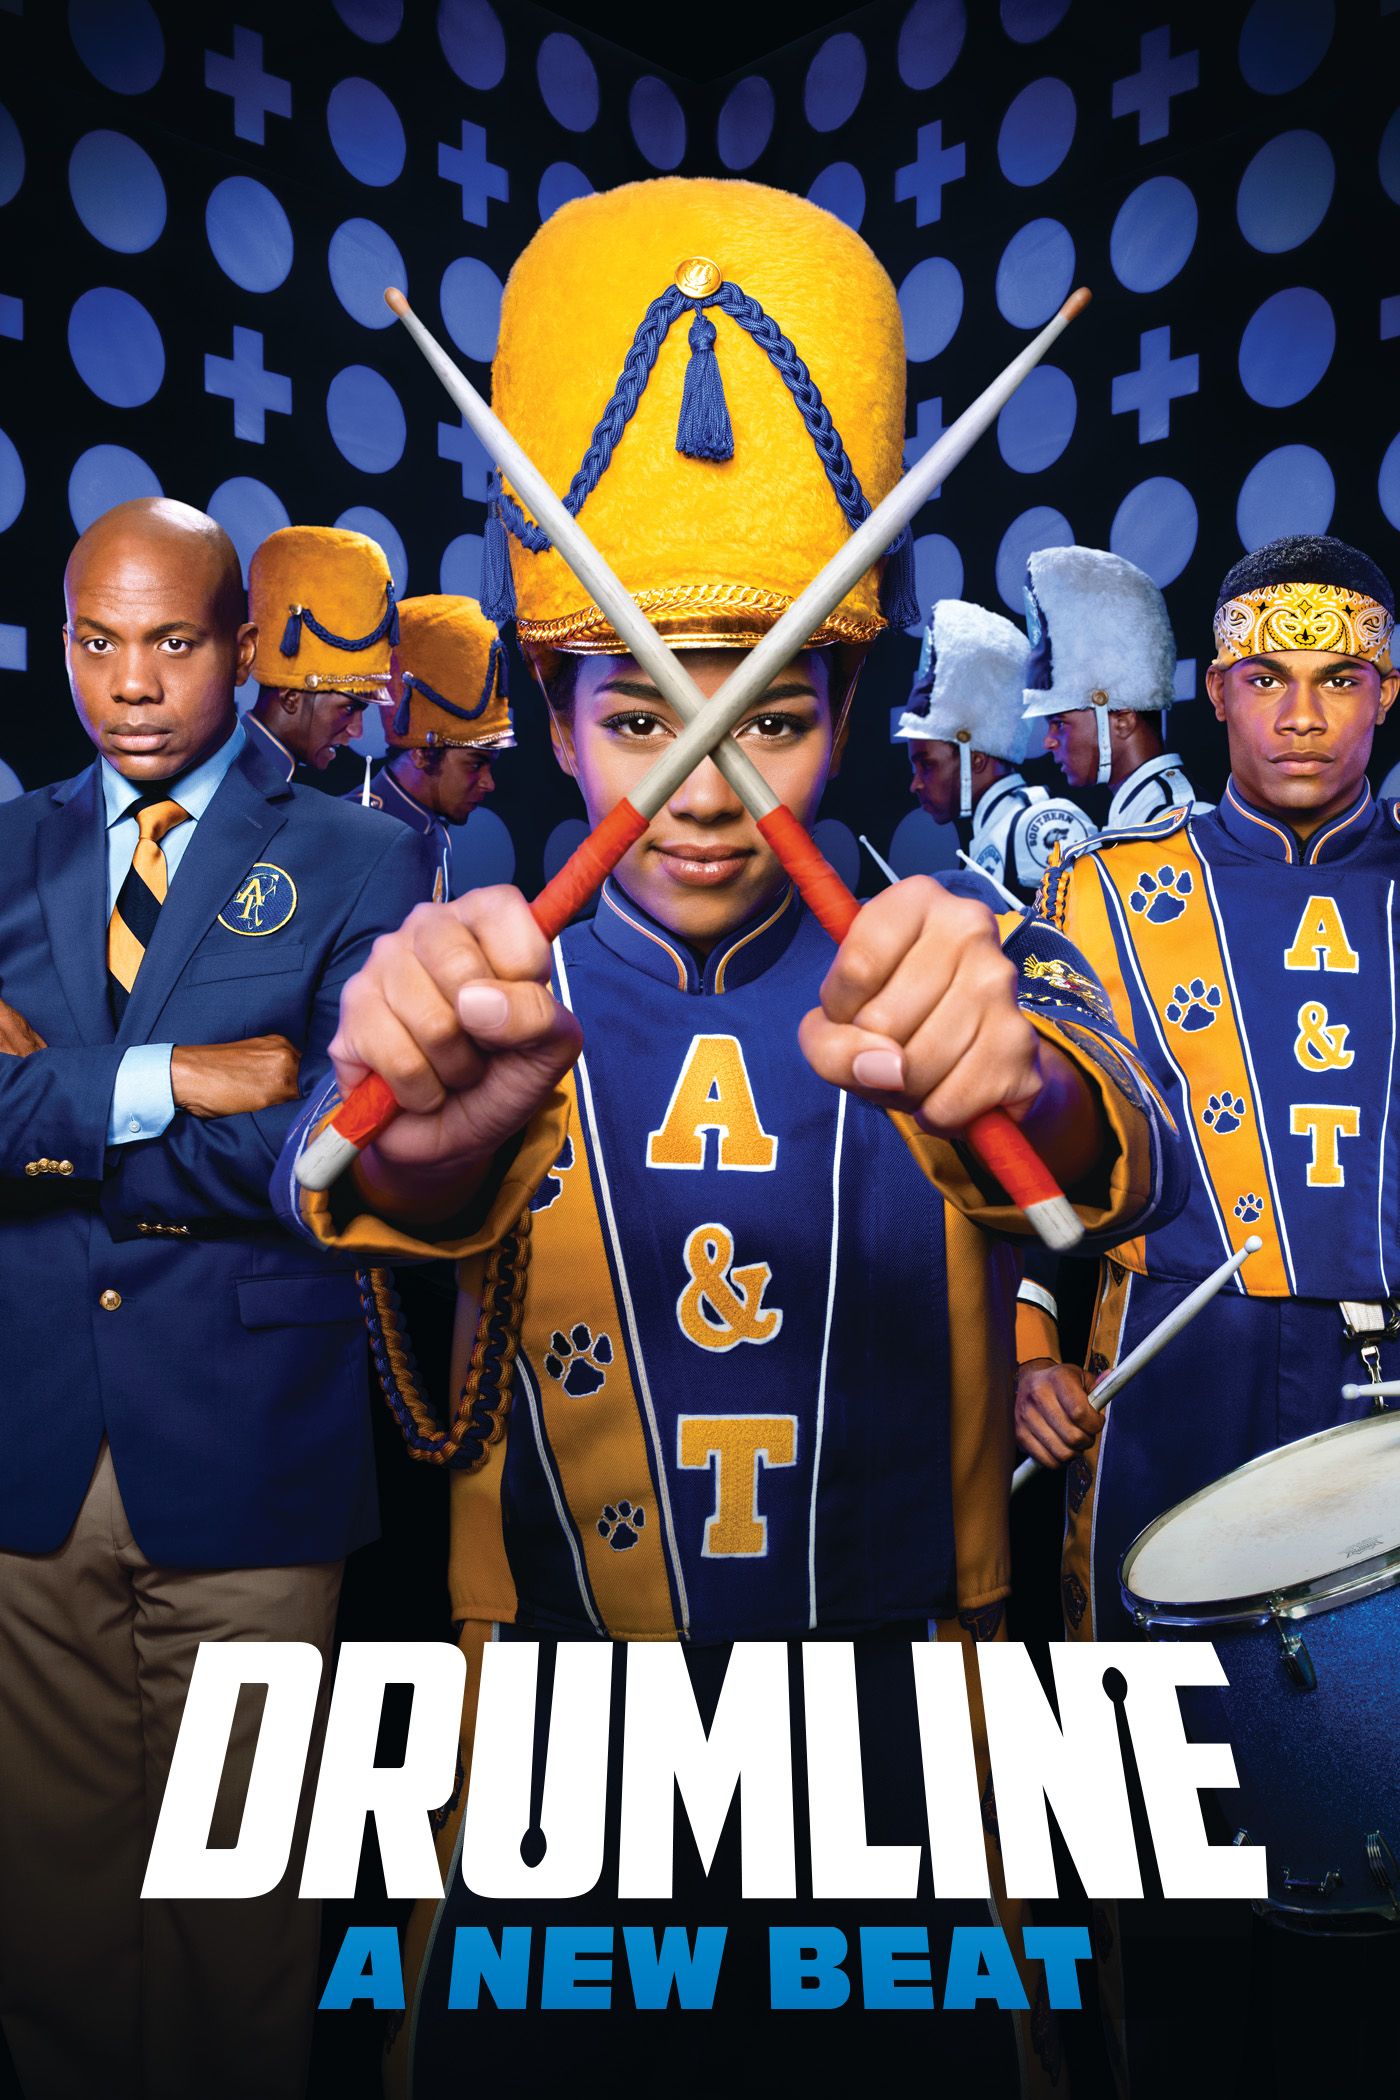 drumline full movie download mp4